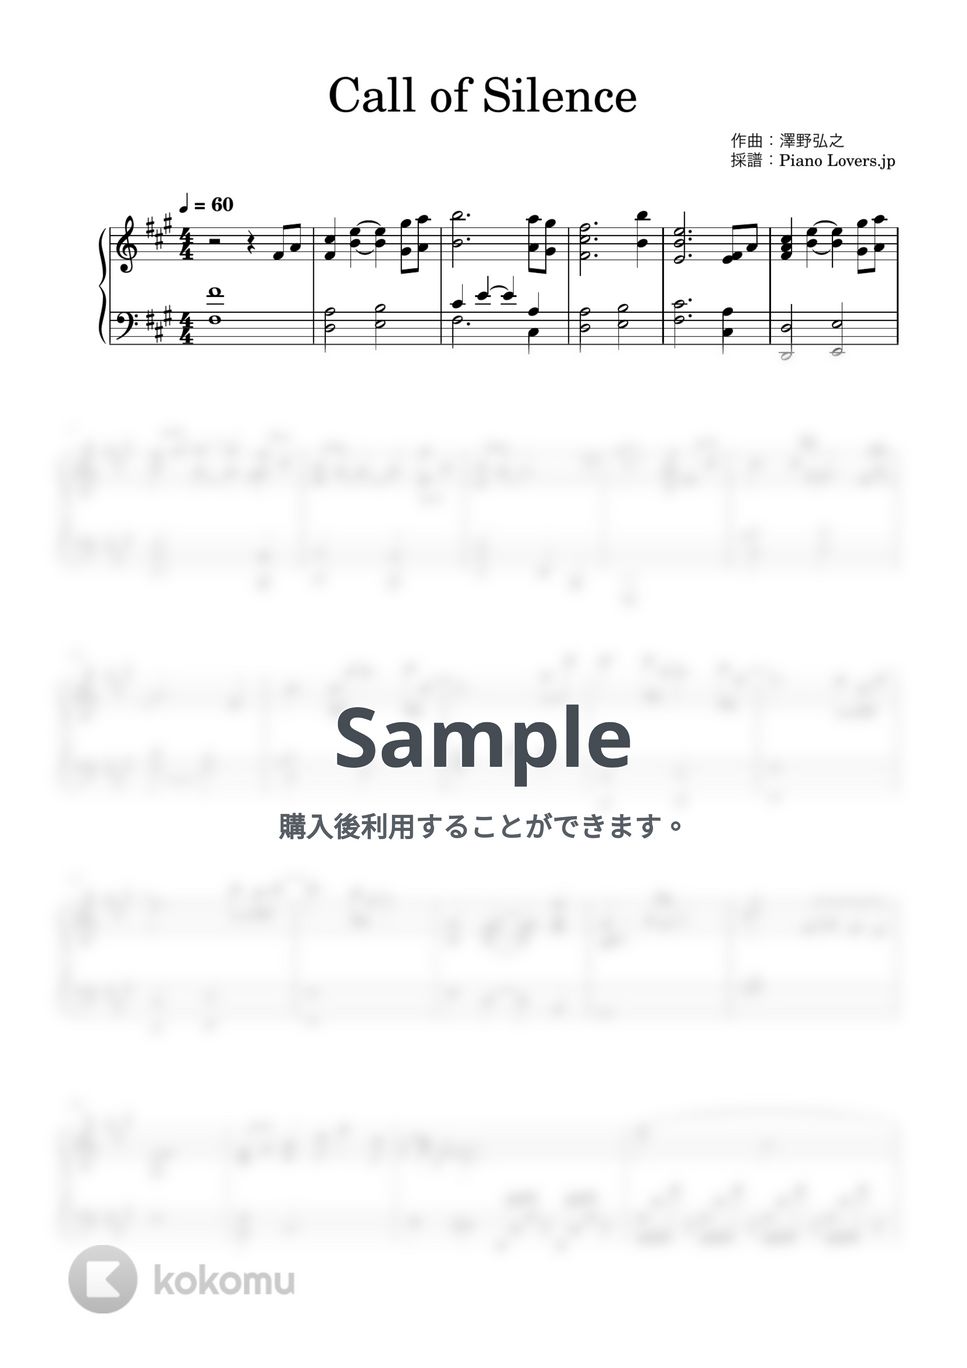 澤野弘之 - Call of Silence (進撃の巨人 / ピアノ楽譜 / 初級) by Piano Lovers. jp